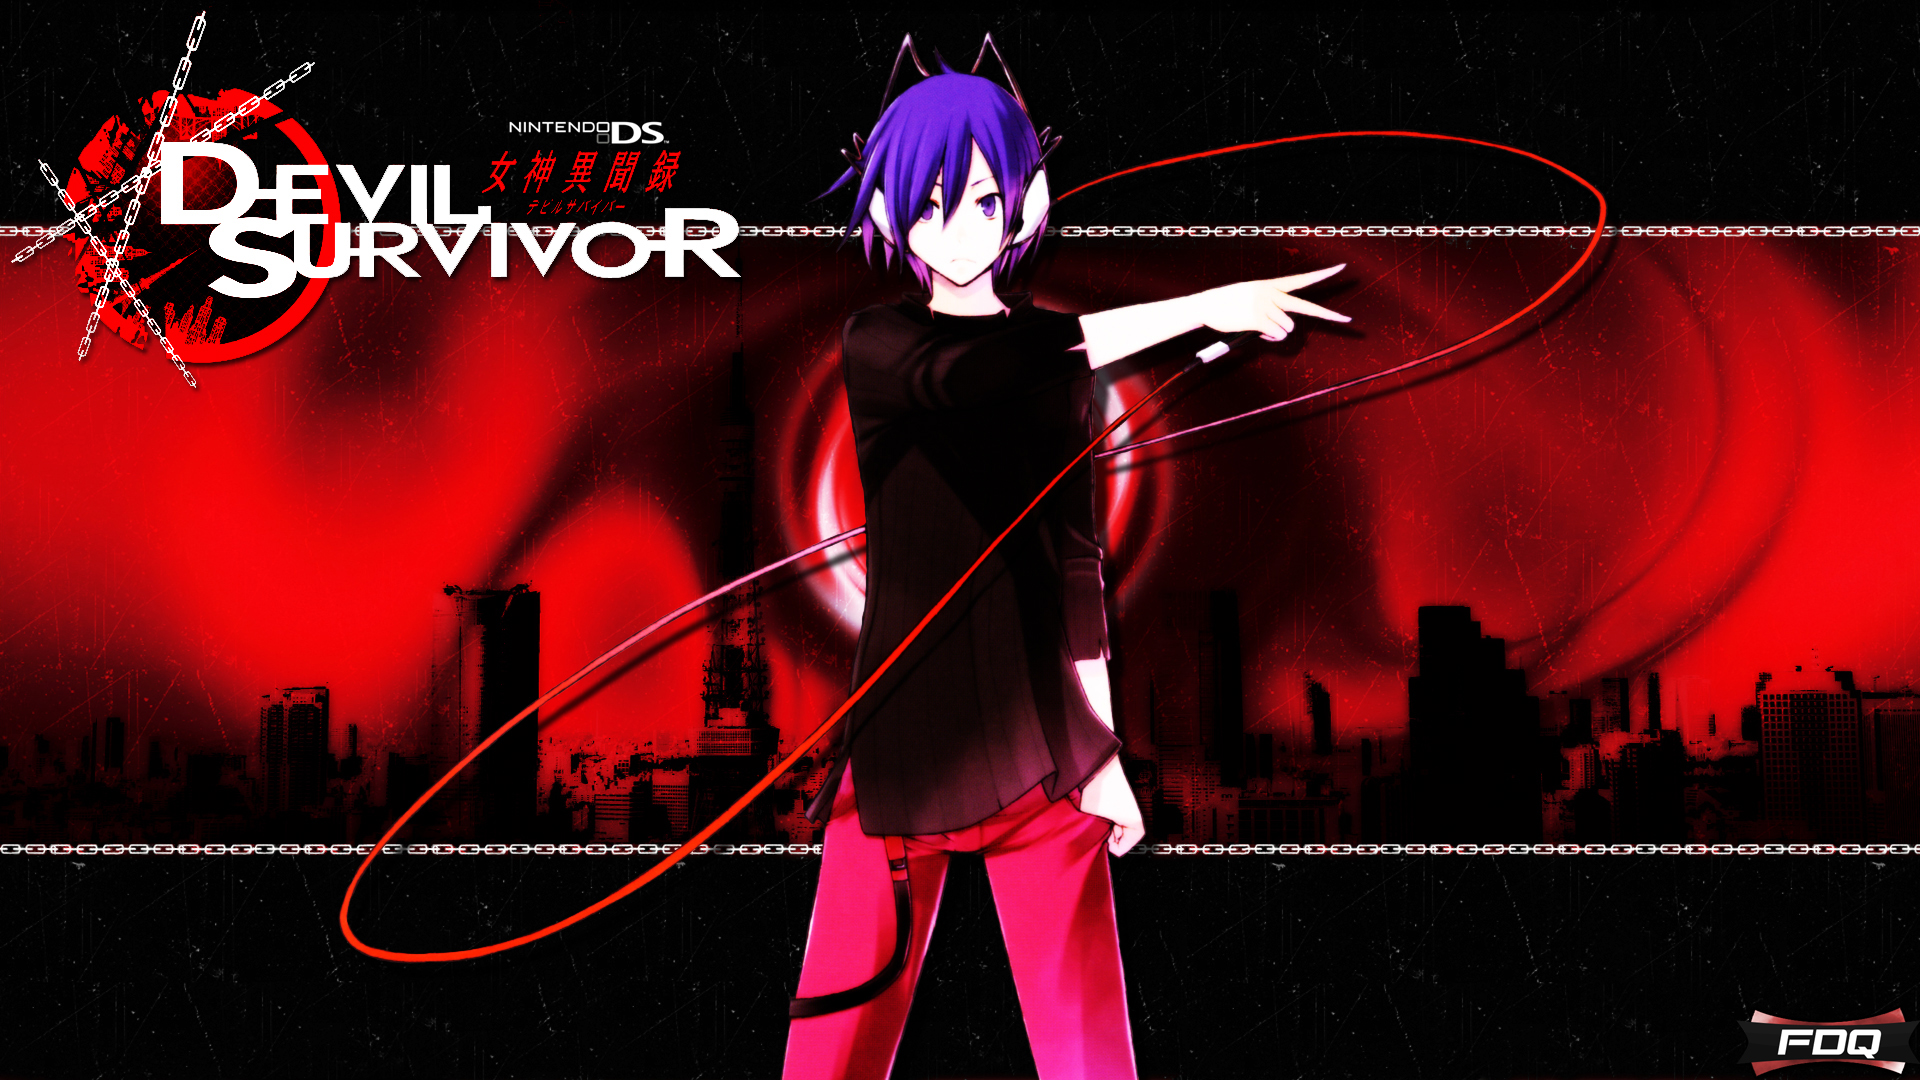 Shin Megami Tensei Devil Survivor q wallpaper background